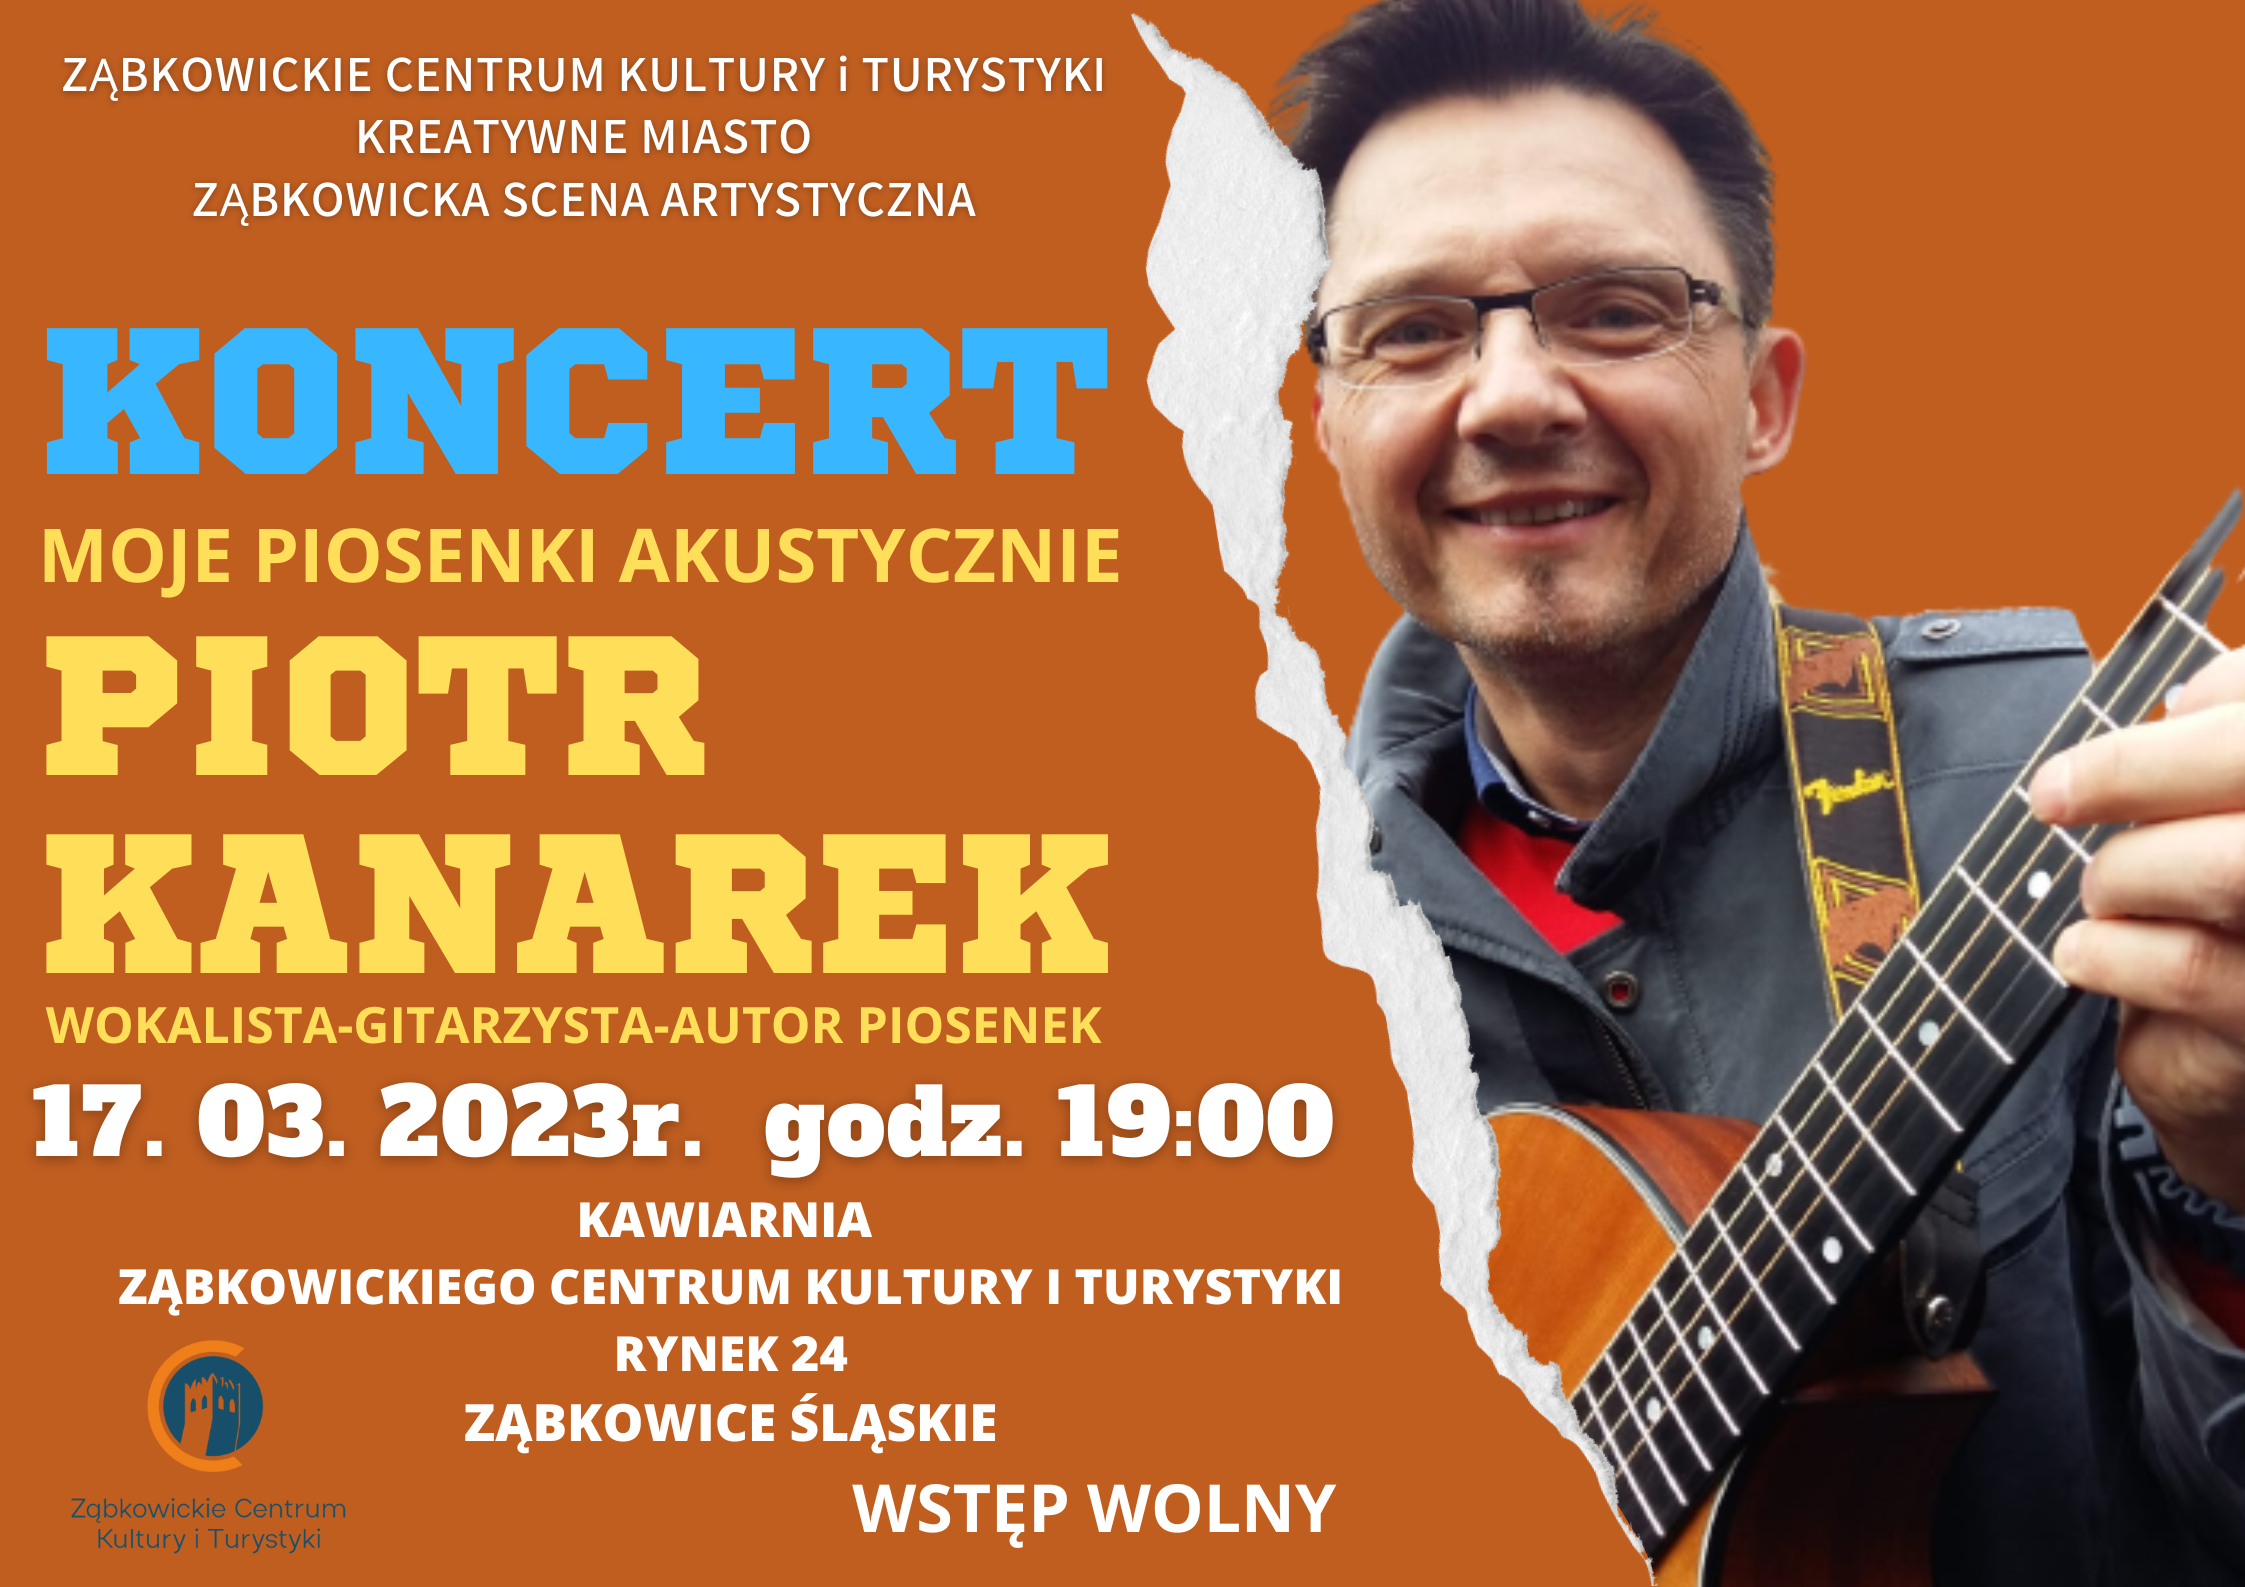 Plakat informujący o koncercie Piotra Kanarka "Moje piosenki akustycznie" 17.03.2023 o godz. 19:00 w kawiarni Ząbkowickiego Centrum Kultury i Turystyki.